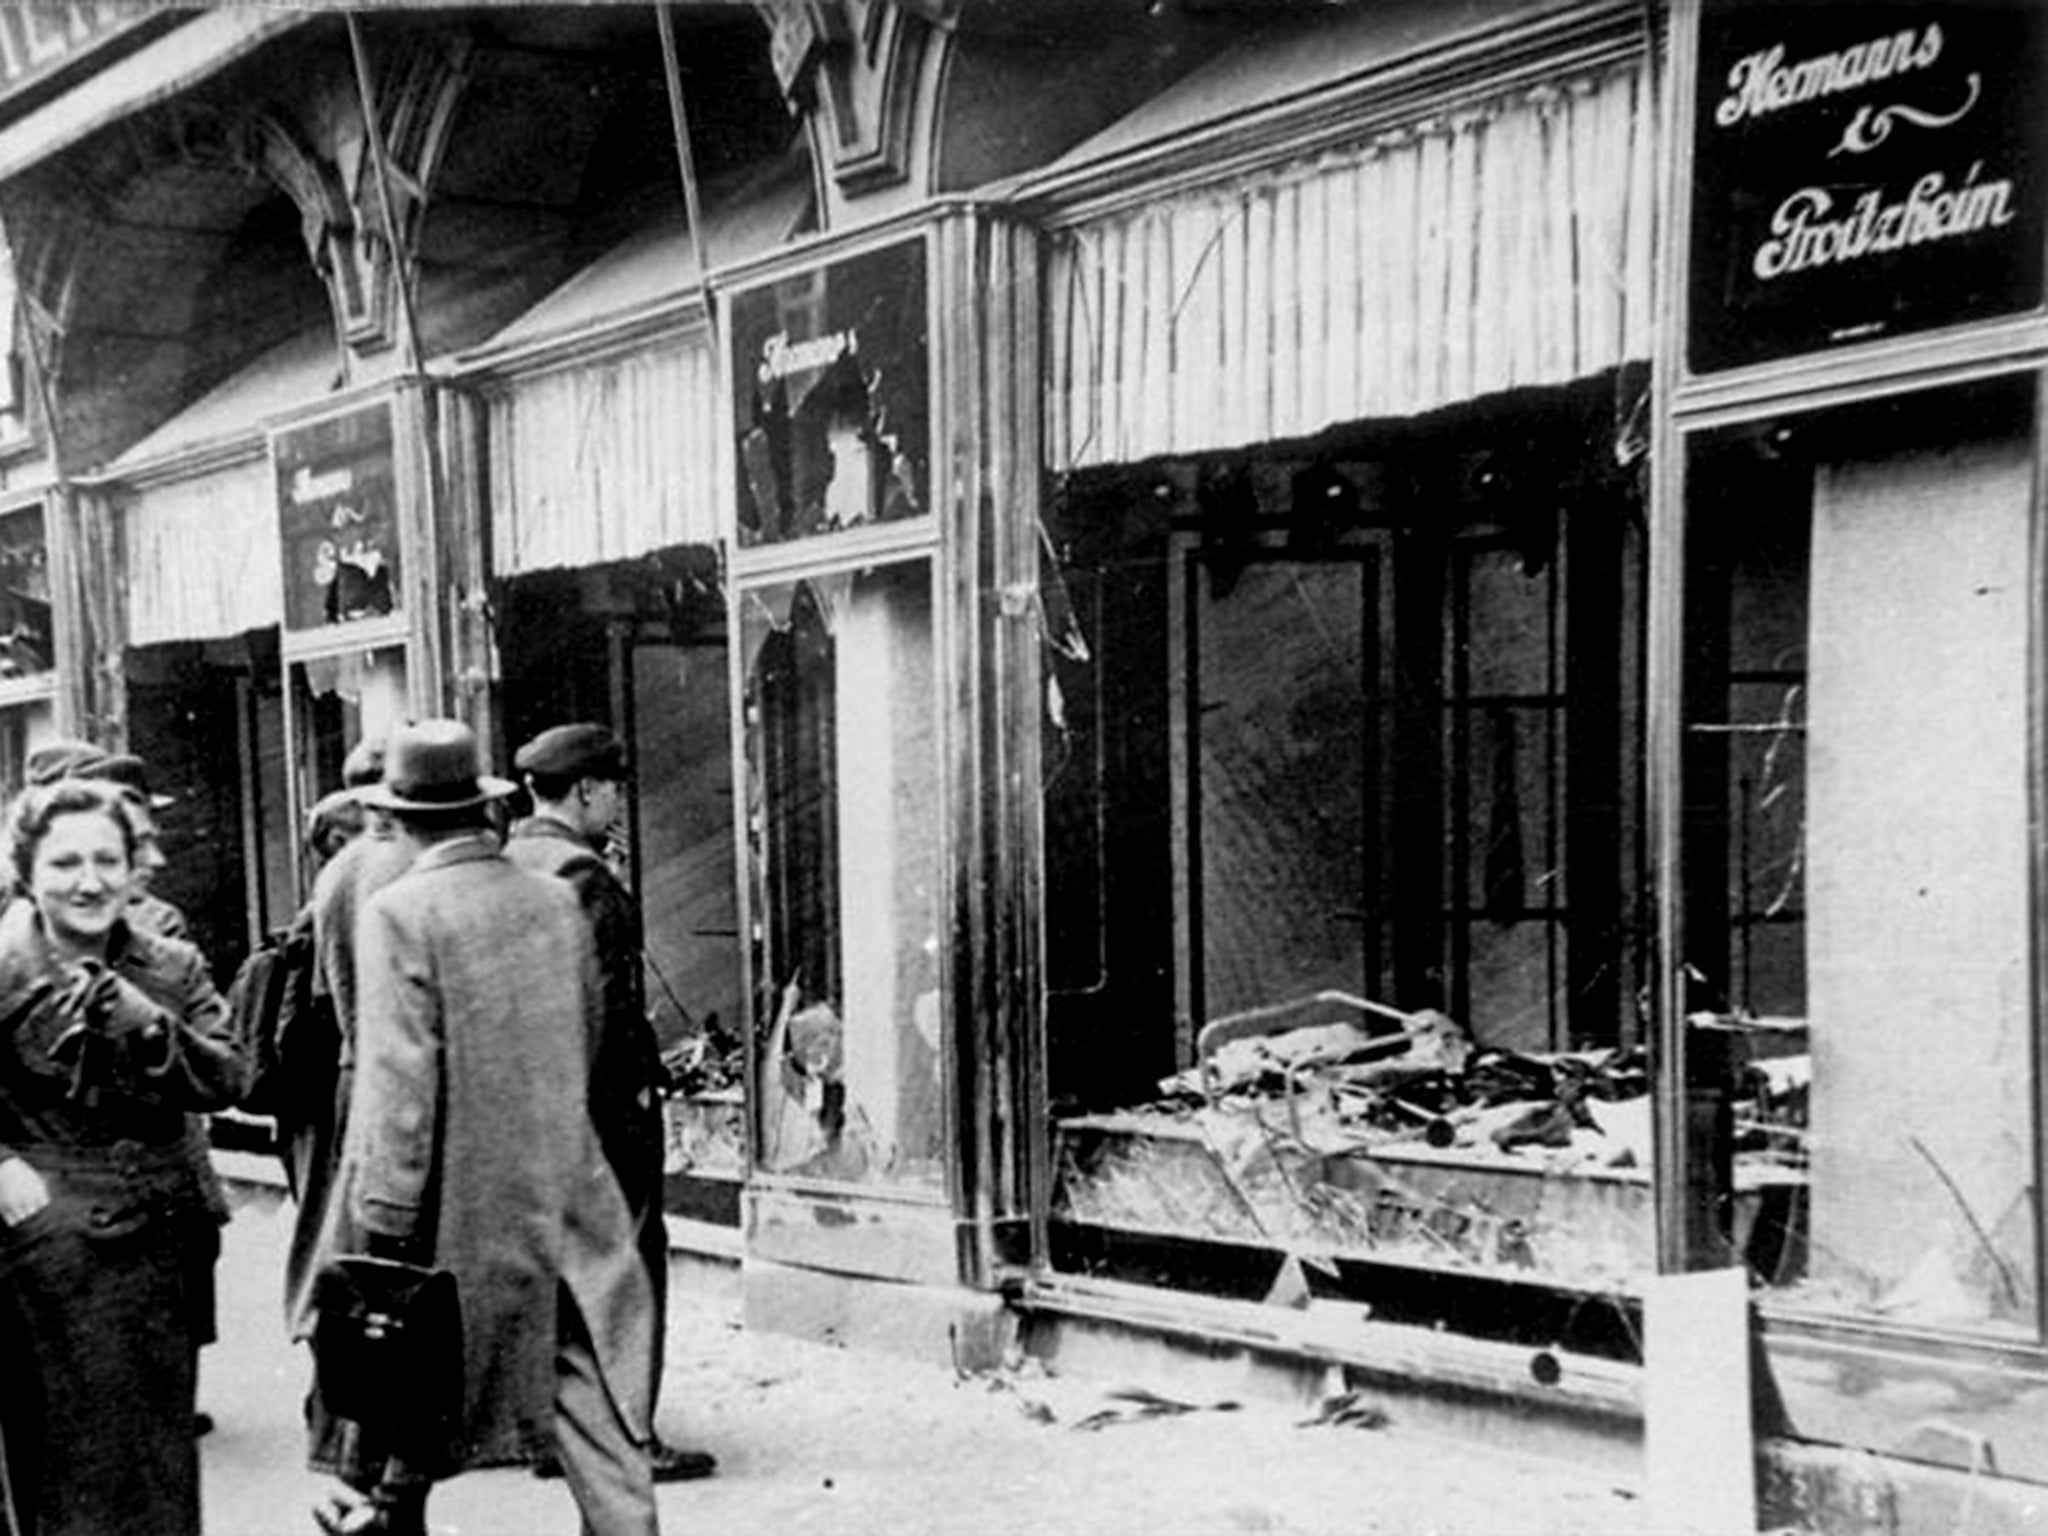 Shop damage in Magdeburg after November 1938’s Kristallnacht